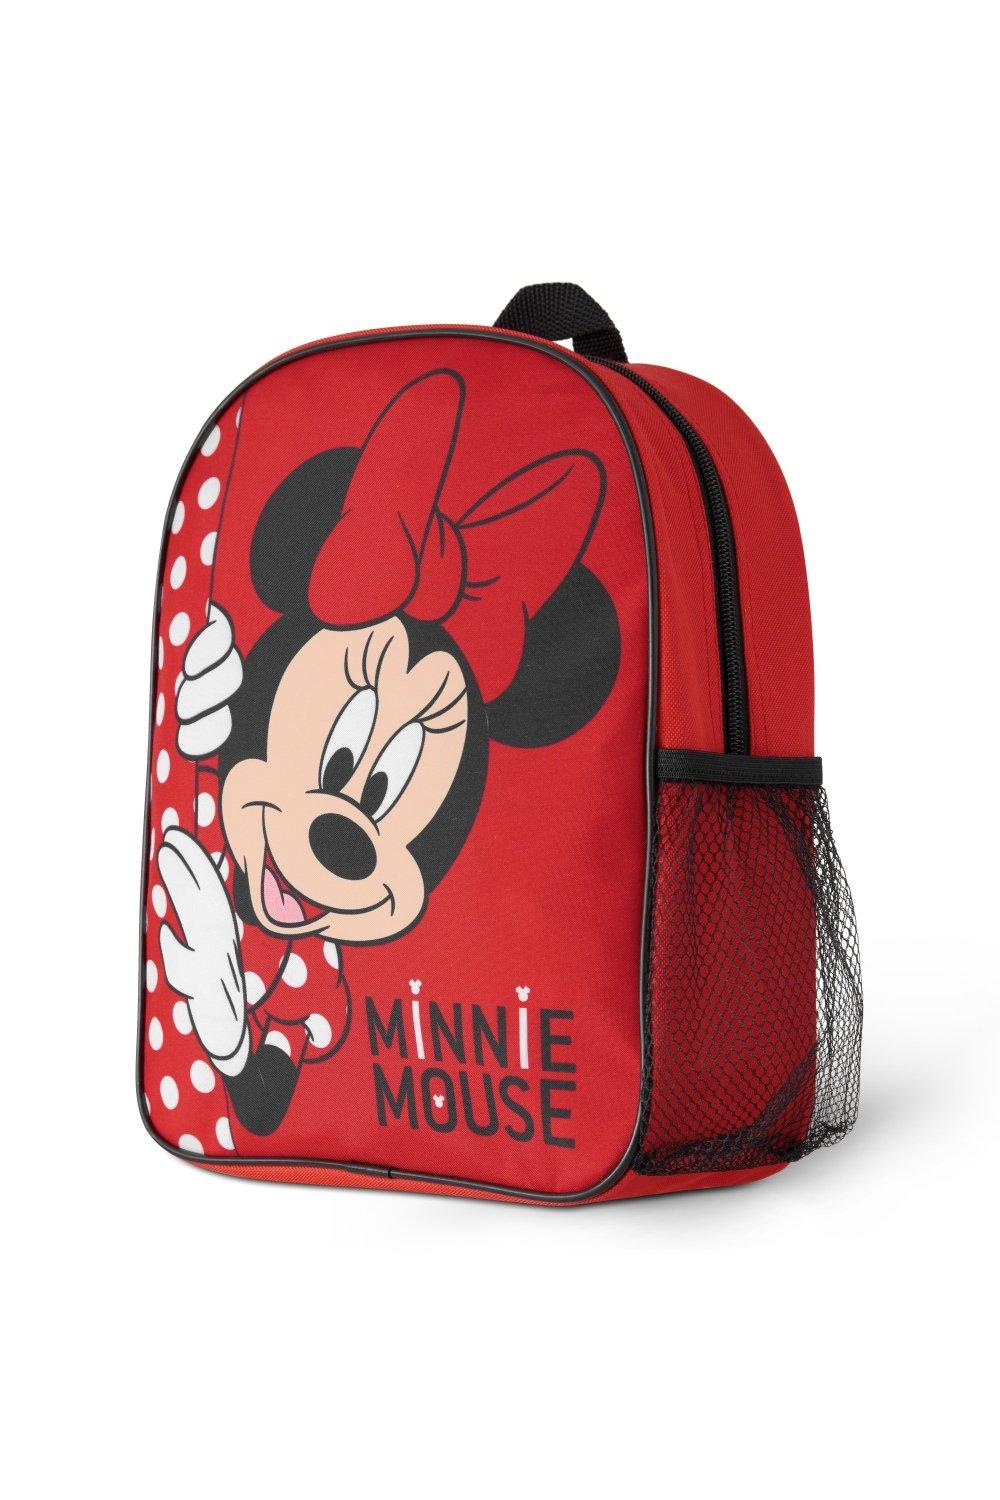 Рюкзак для девочек Минни Маус Disney, красный рюкзак минни маус mickey mouse голубой 1